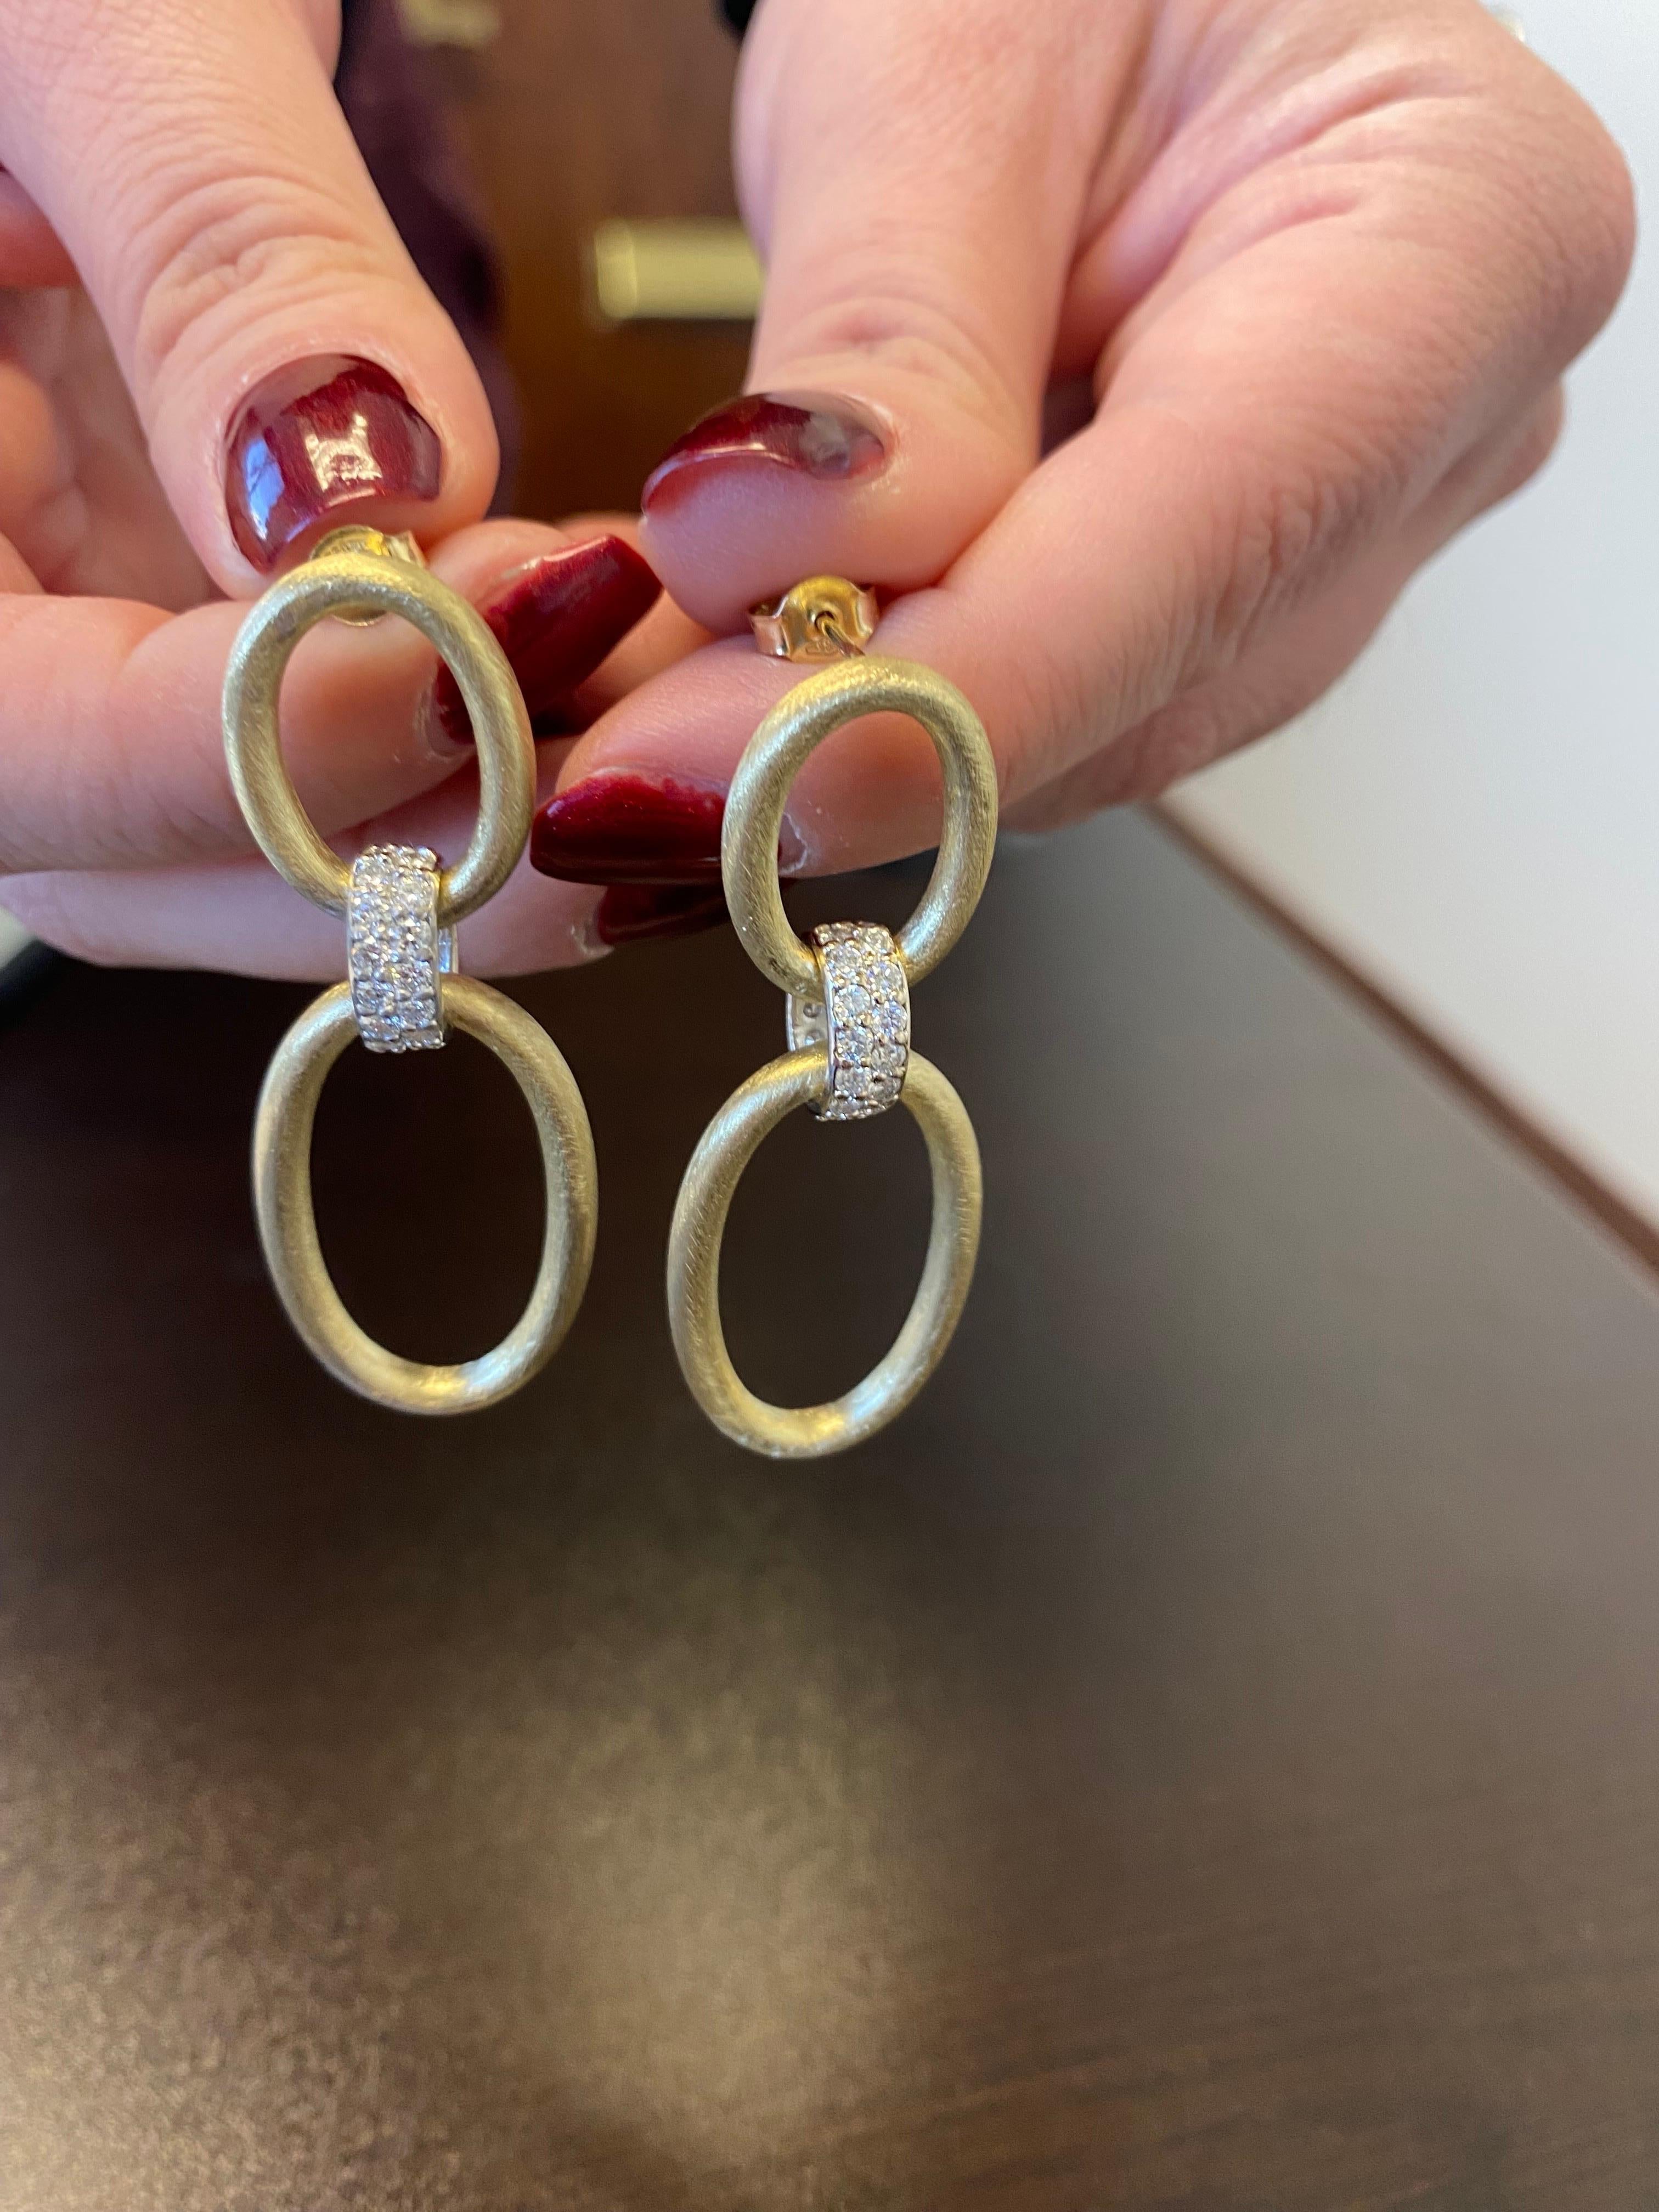 Boucles d'oreilles pendantes en diamant serties dans de l'or jaune et blanc 14K 2 tons. Les boucles d'oreilles sont en or jaune mat. Le poids total en carats est de 1,50. La couleur des pierres est G, la pureté est SI1-SI2. Les boucles d'oreilles